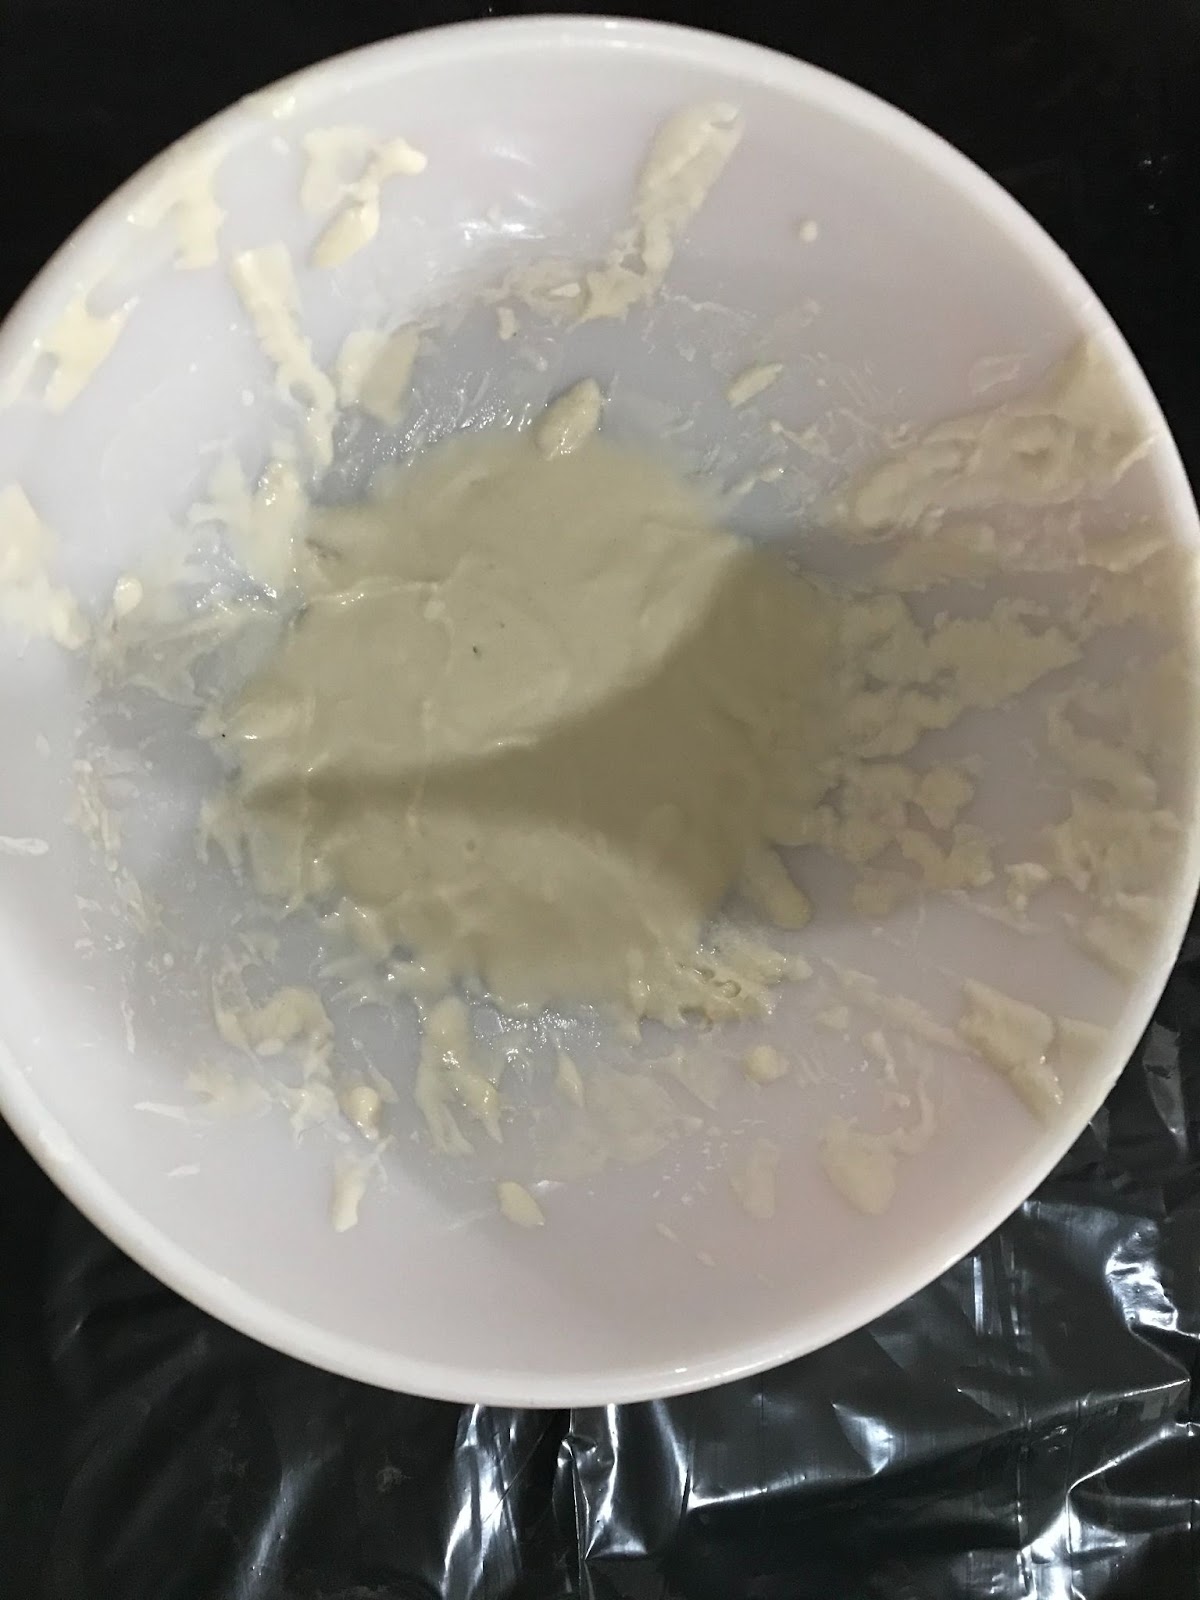 making paper mache in a bowl